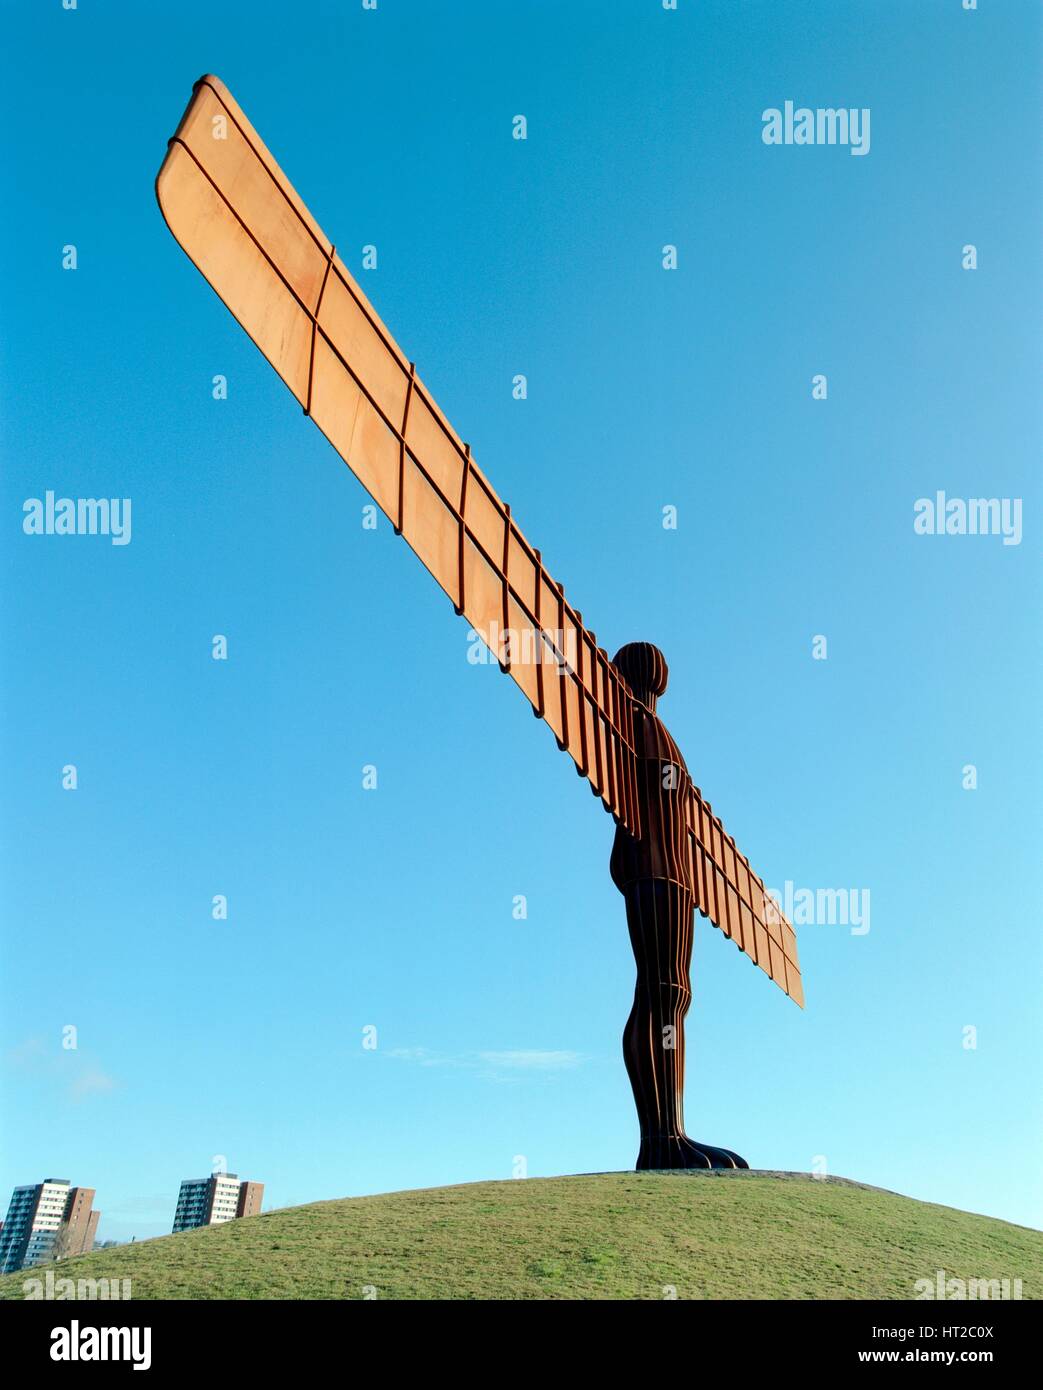 Der Engel des Nordens, Gateshead, Tyne and Wear, c2000s(?). Künstler: Historisches England Angestellter Fotograf. Stockfoto